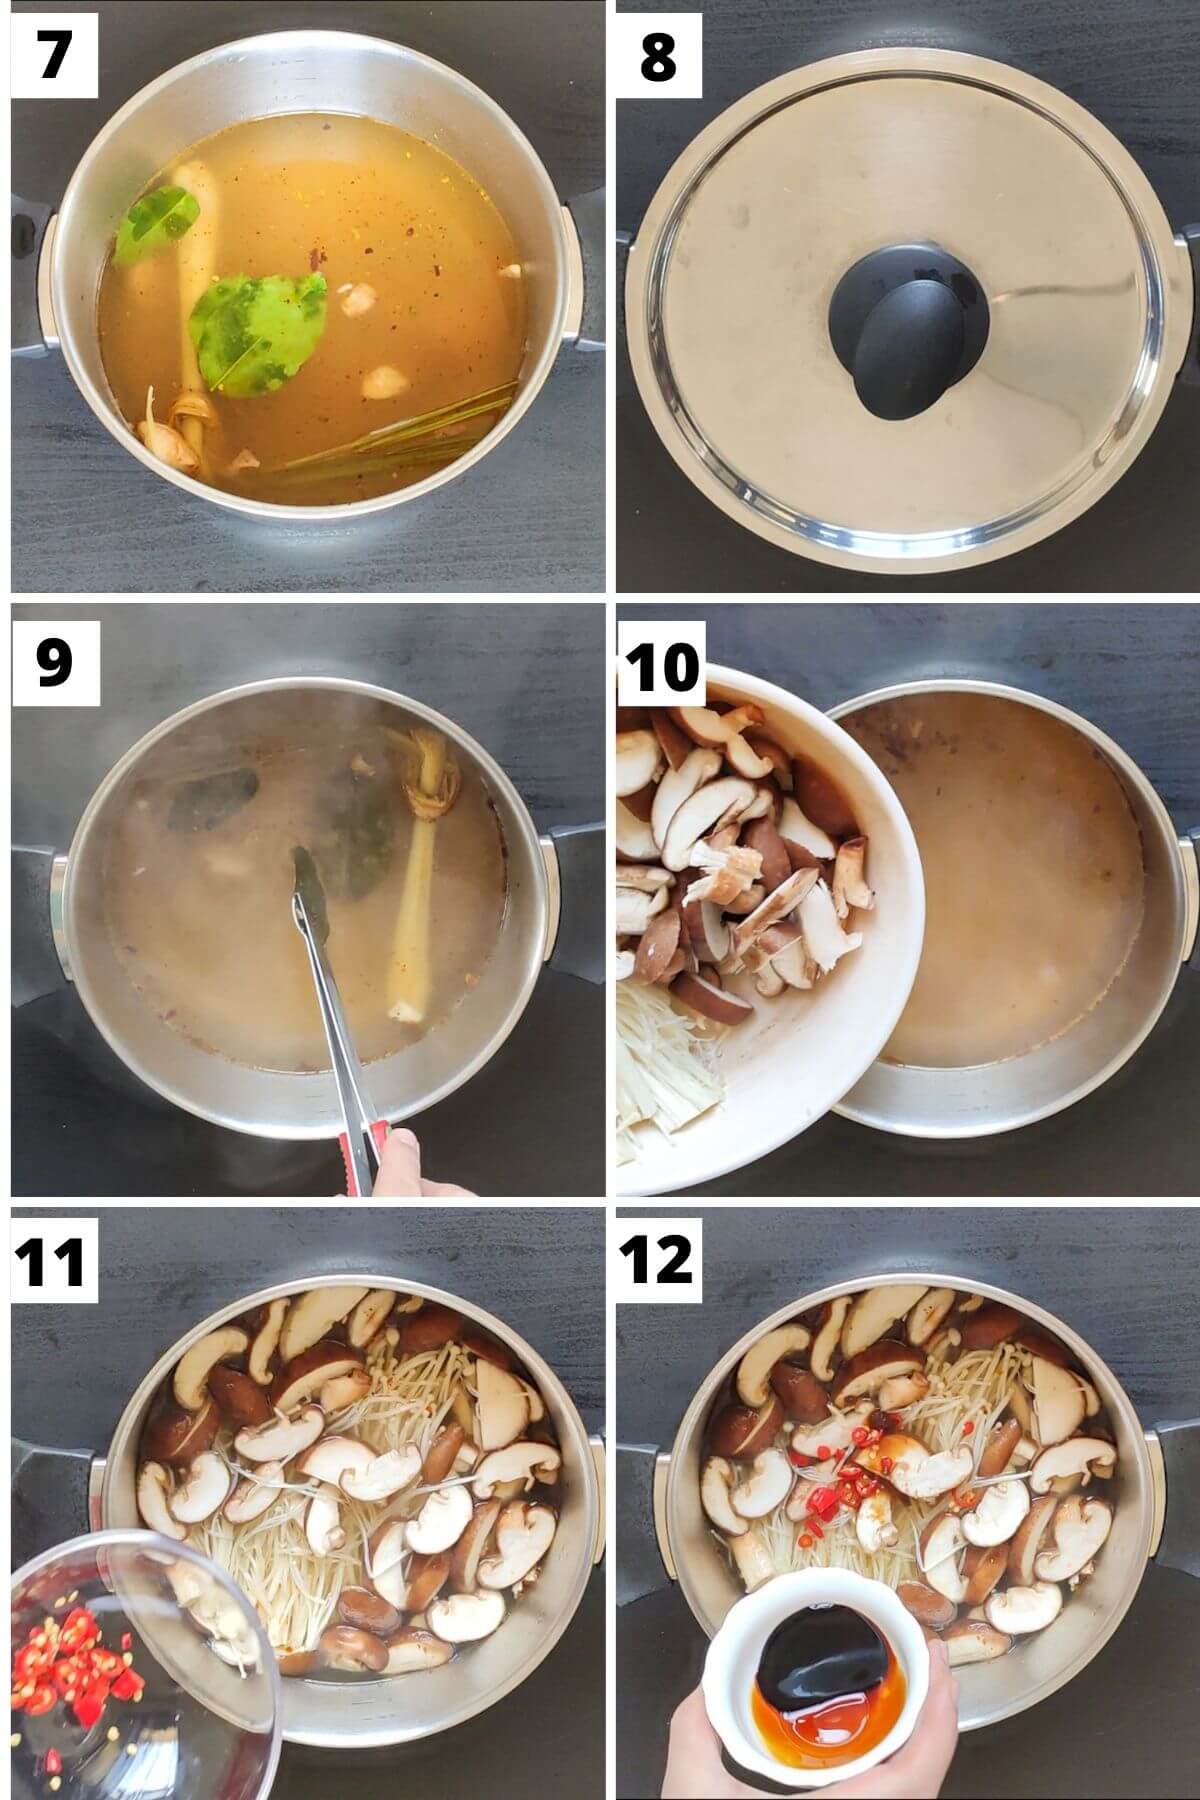 Steps to make mushroom tom yum soup